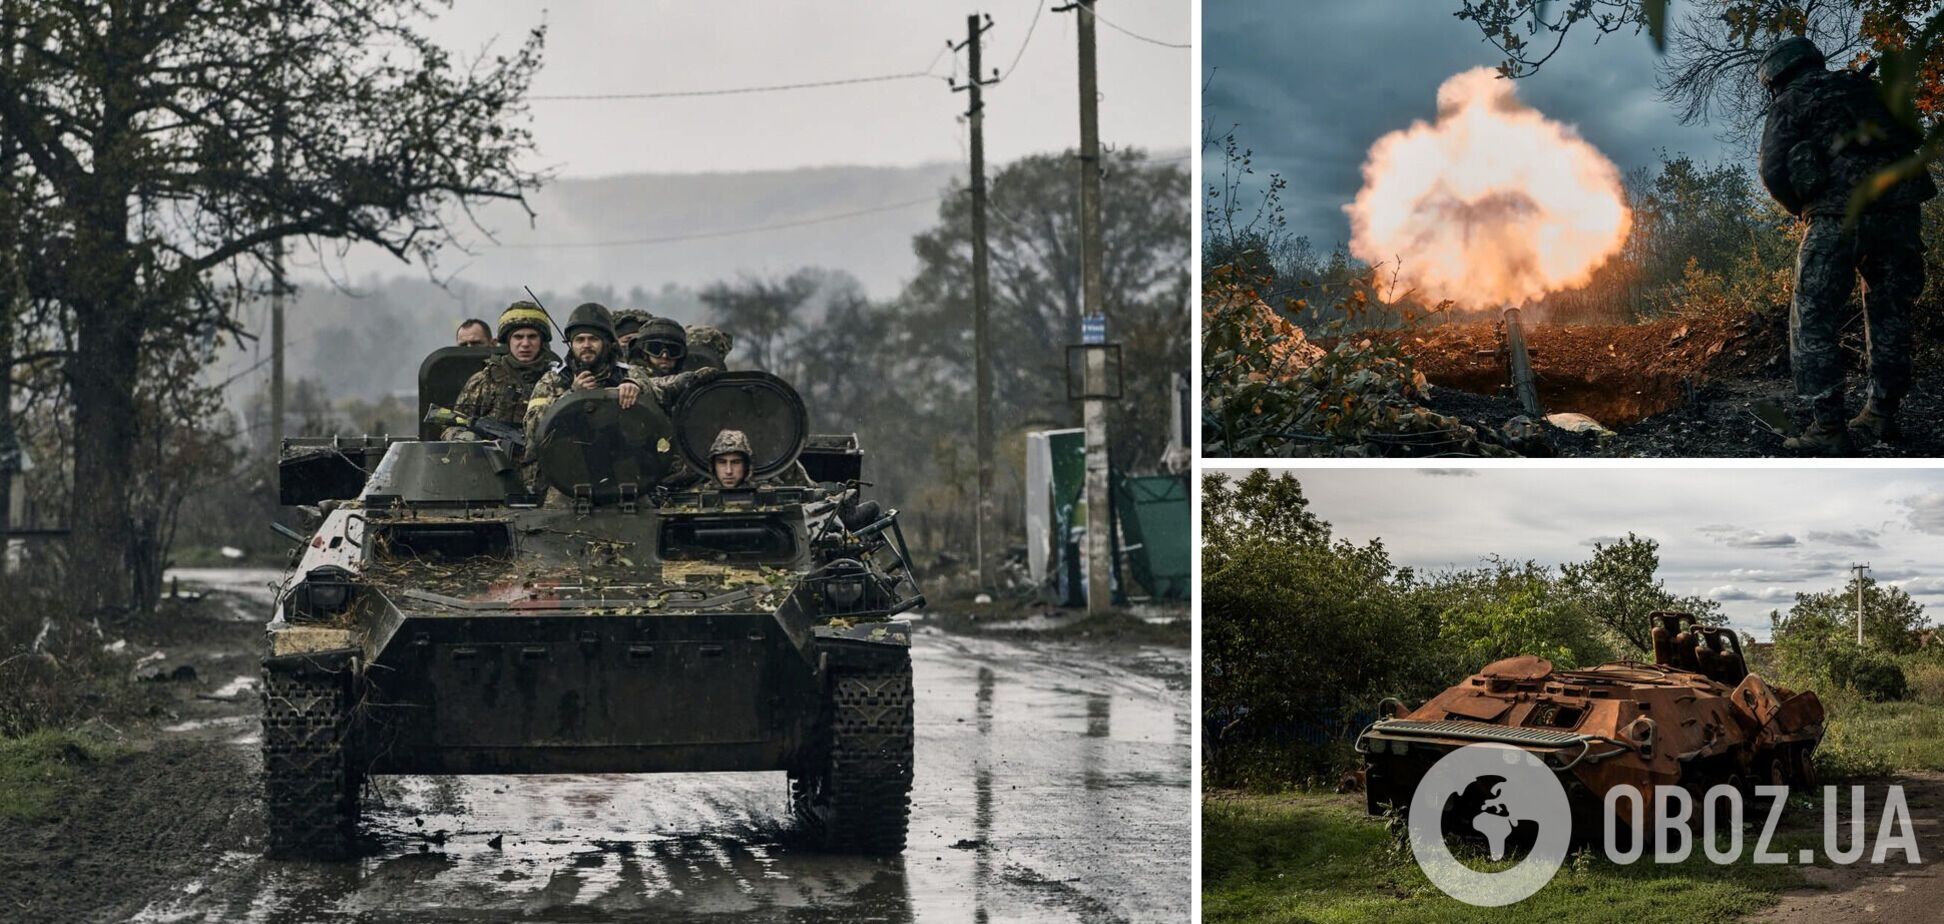 РФ вербует на войну против Украины иностранных наемников, ВСУ поразили пункты управления врага и состав БК – Генштаб